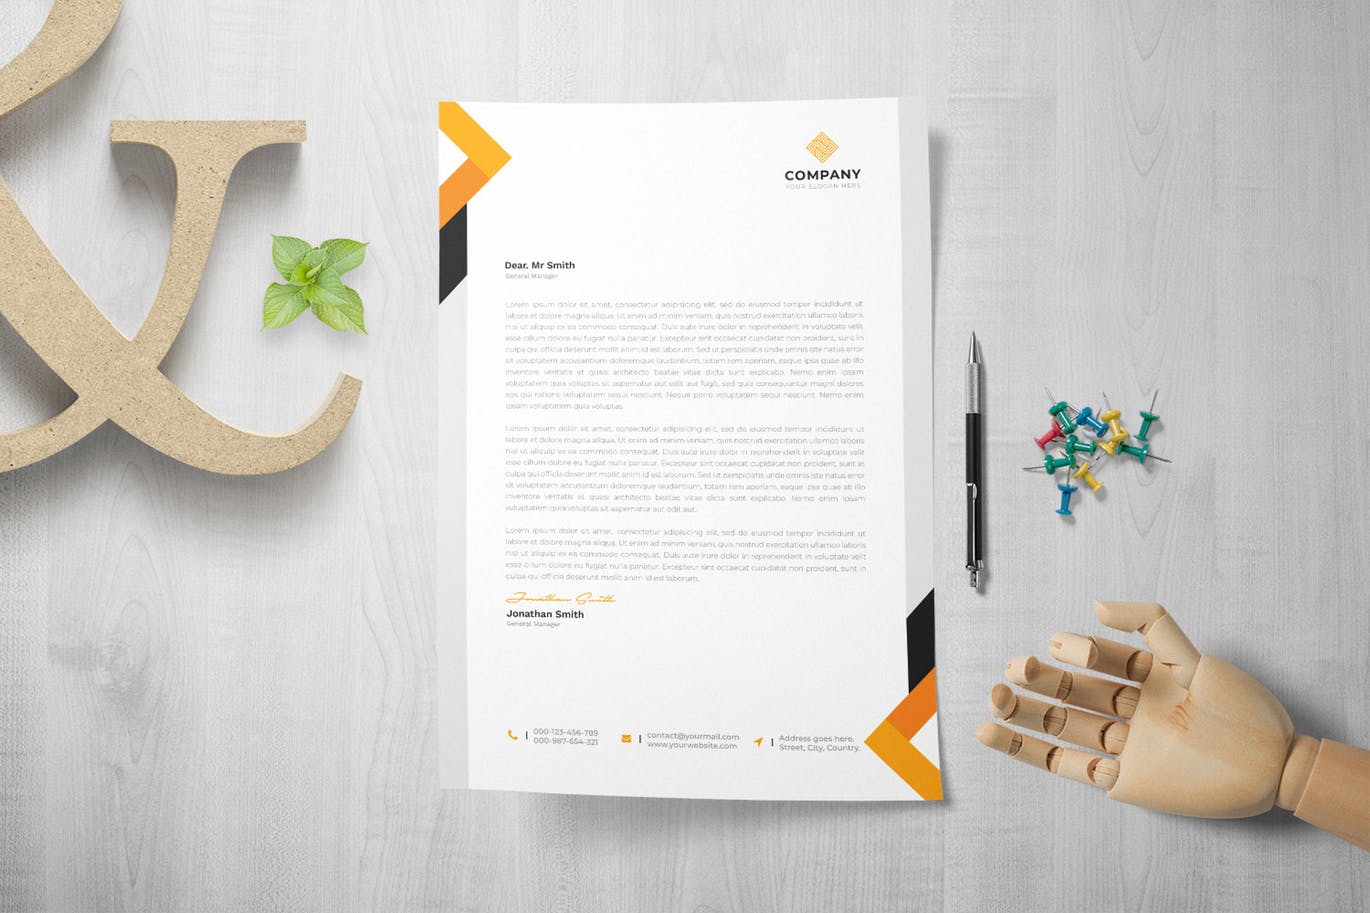 网络科技/技术开发企业信纸排版模板 Letterhead插图(3)